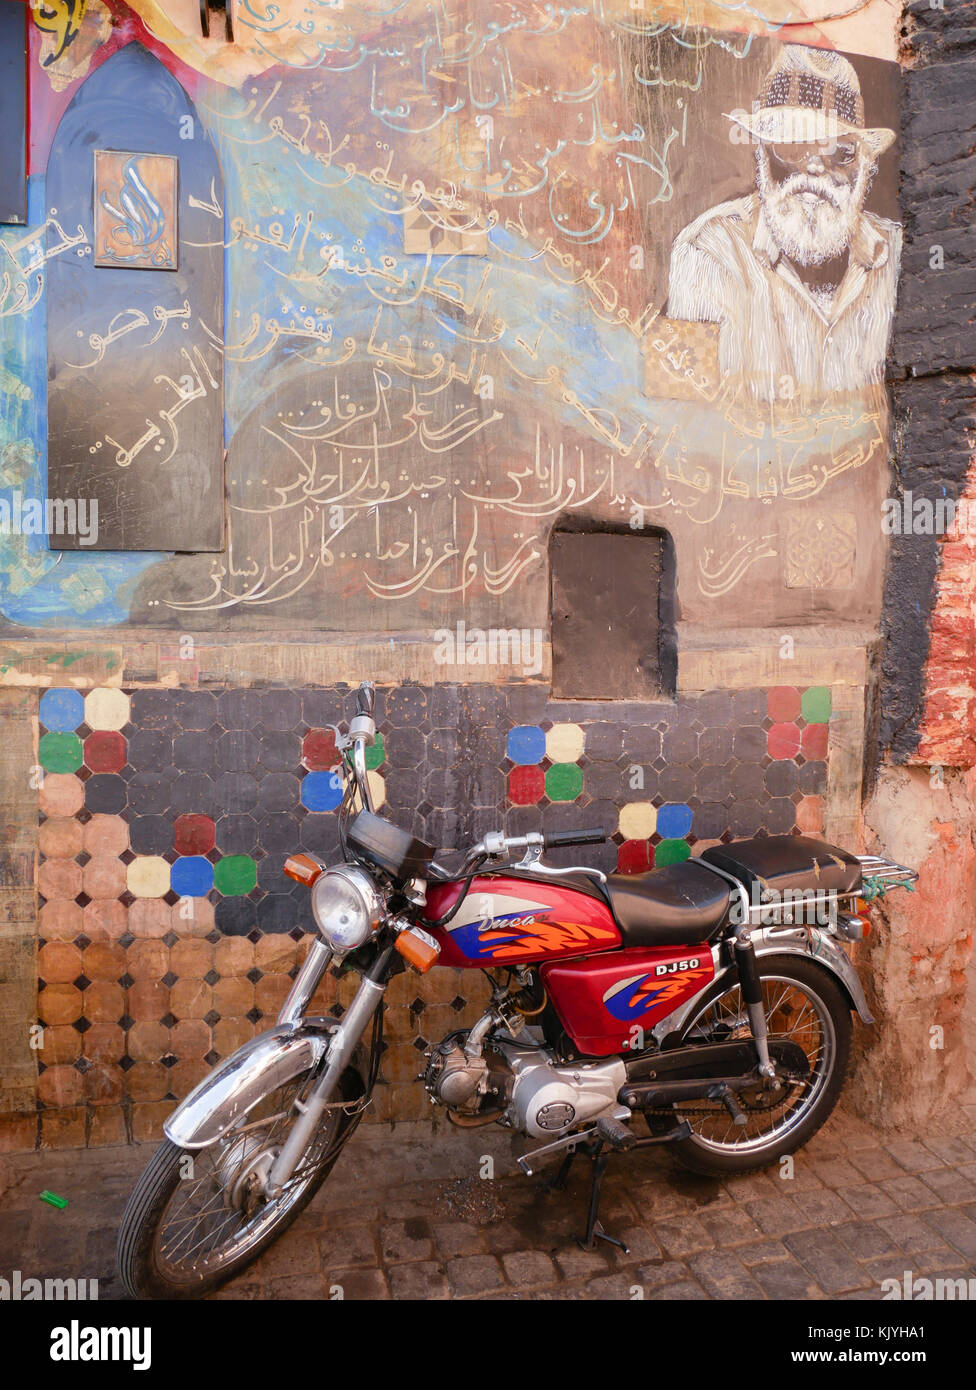 Pour moto garée à côté du mur peint Banque D'Images